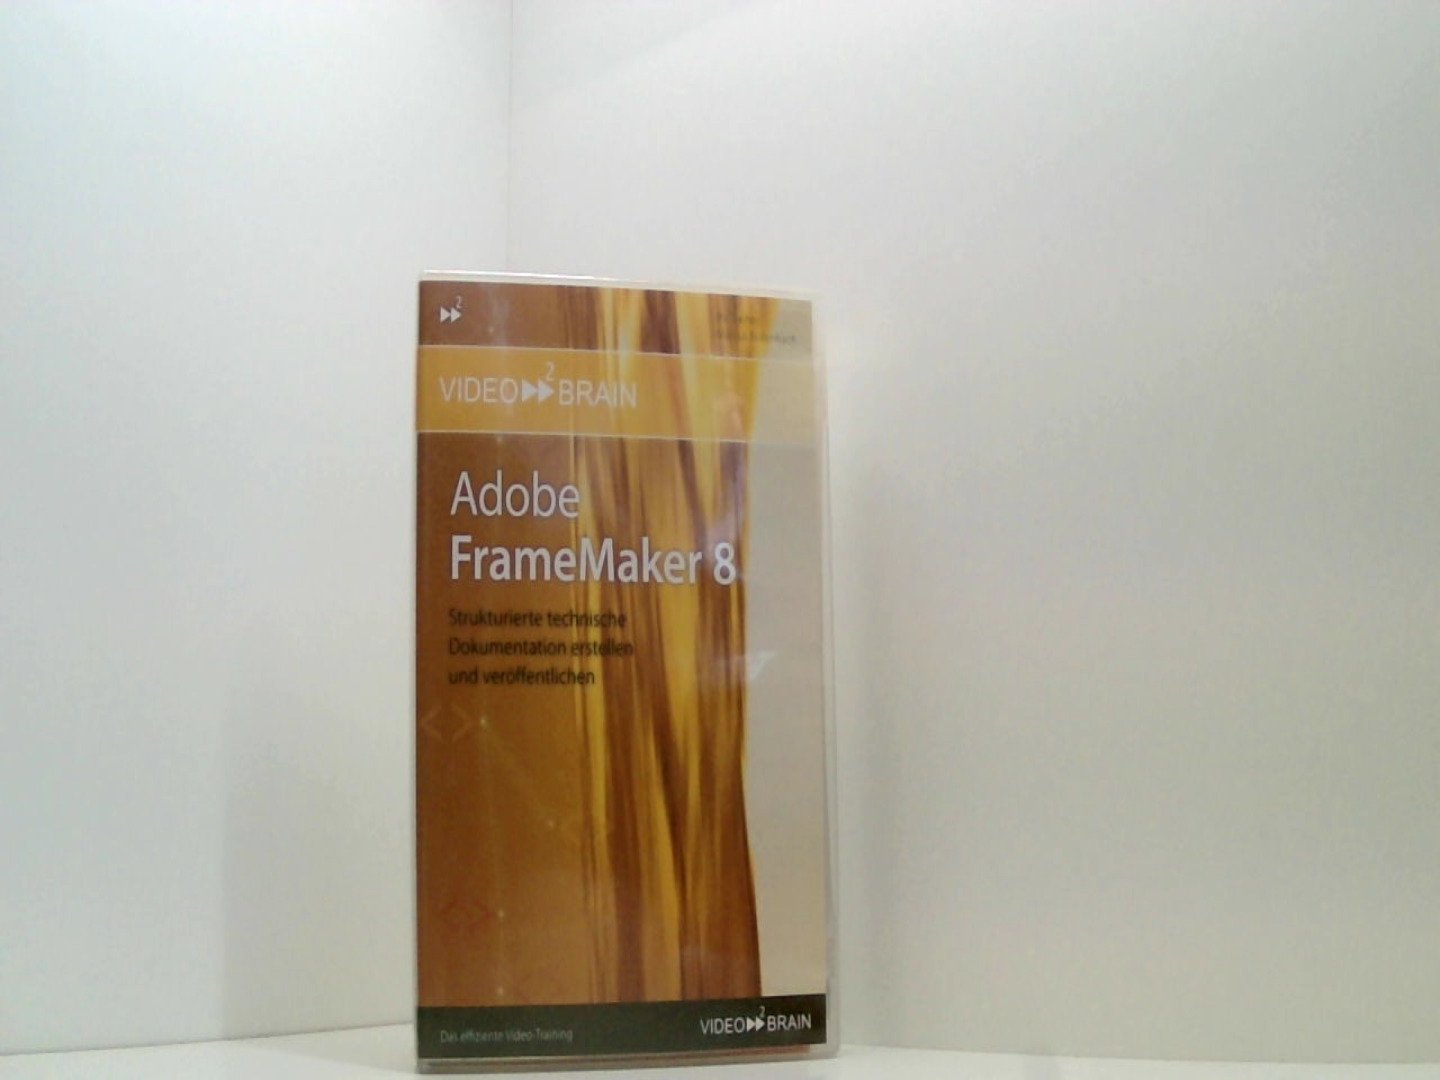 Adobe FrameMaker 8. Strukturierte technische Dokumentation erstellen und veröffentlichen - Bollenbach, Marcus